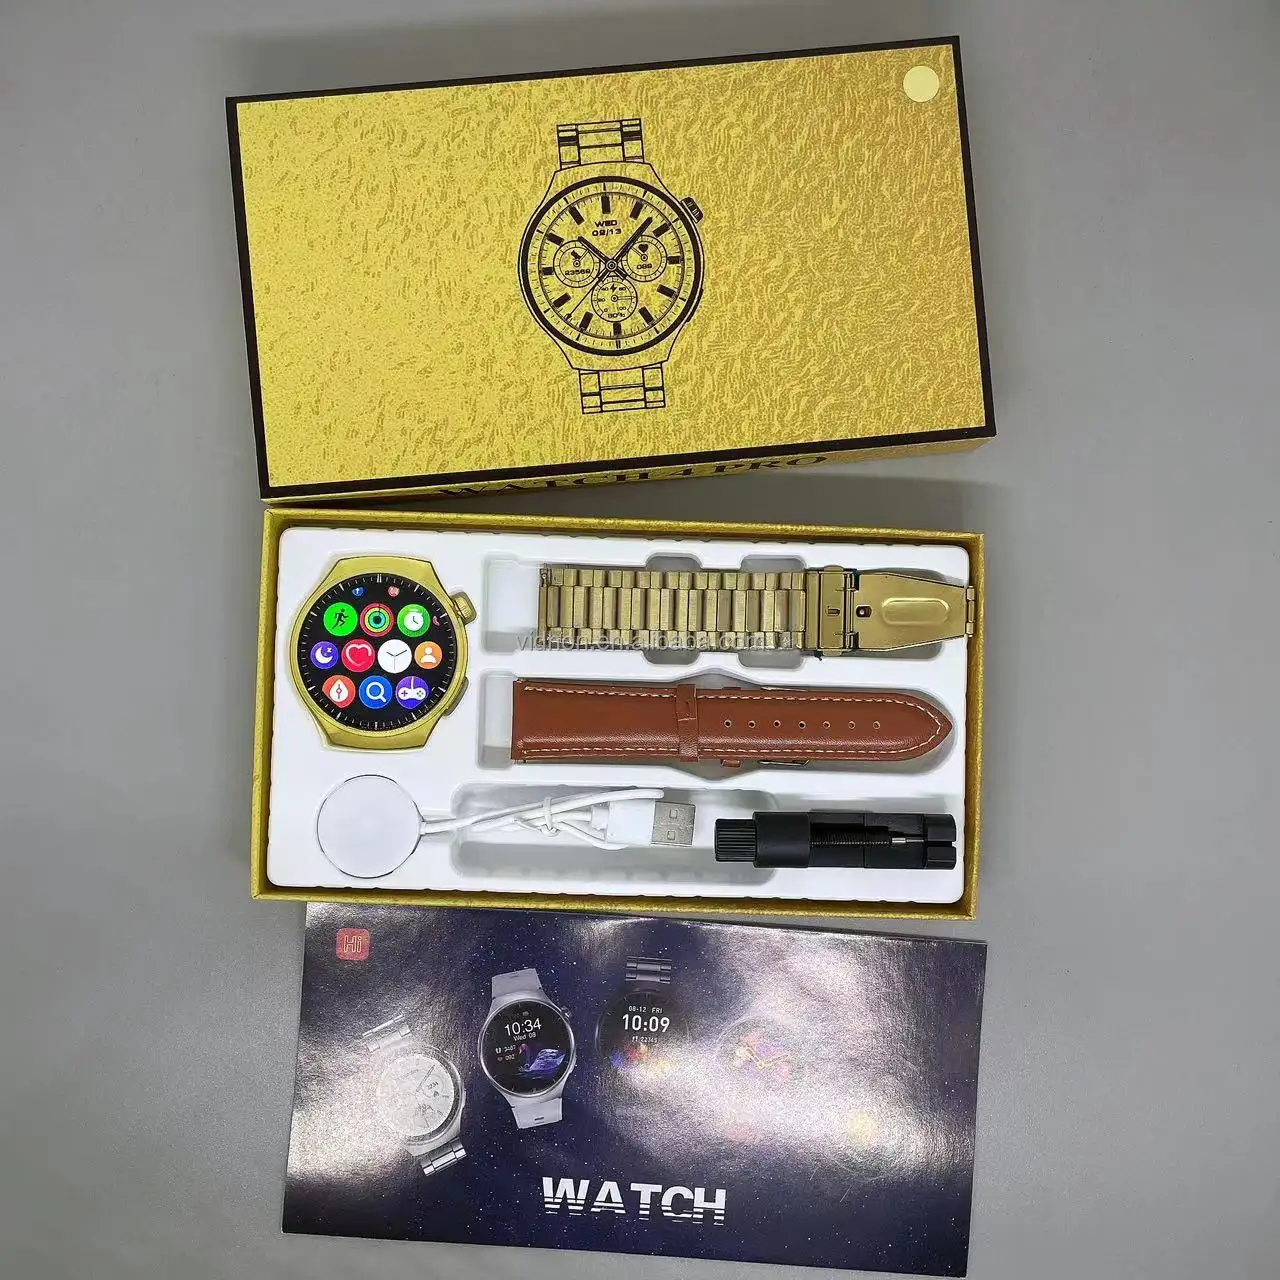 Luxury smartwatch 1.52" Golden watch for man waterproof reloj inteligente low battery consumption watch4pro smart watch